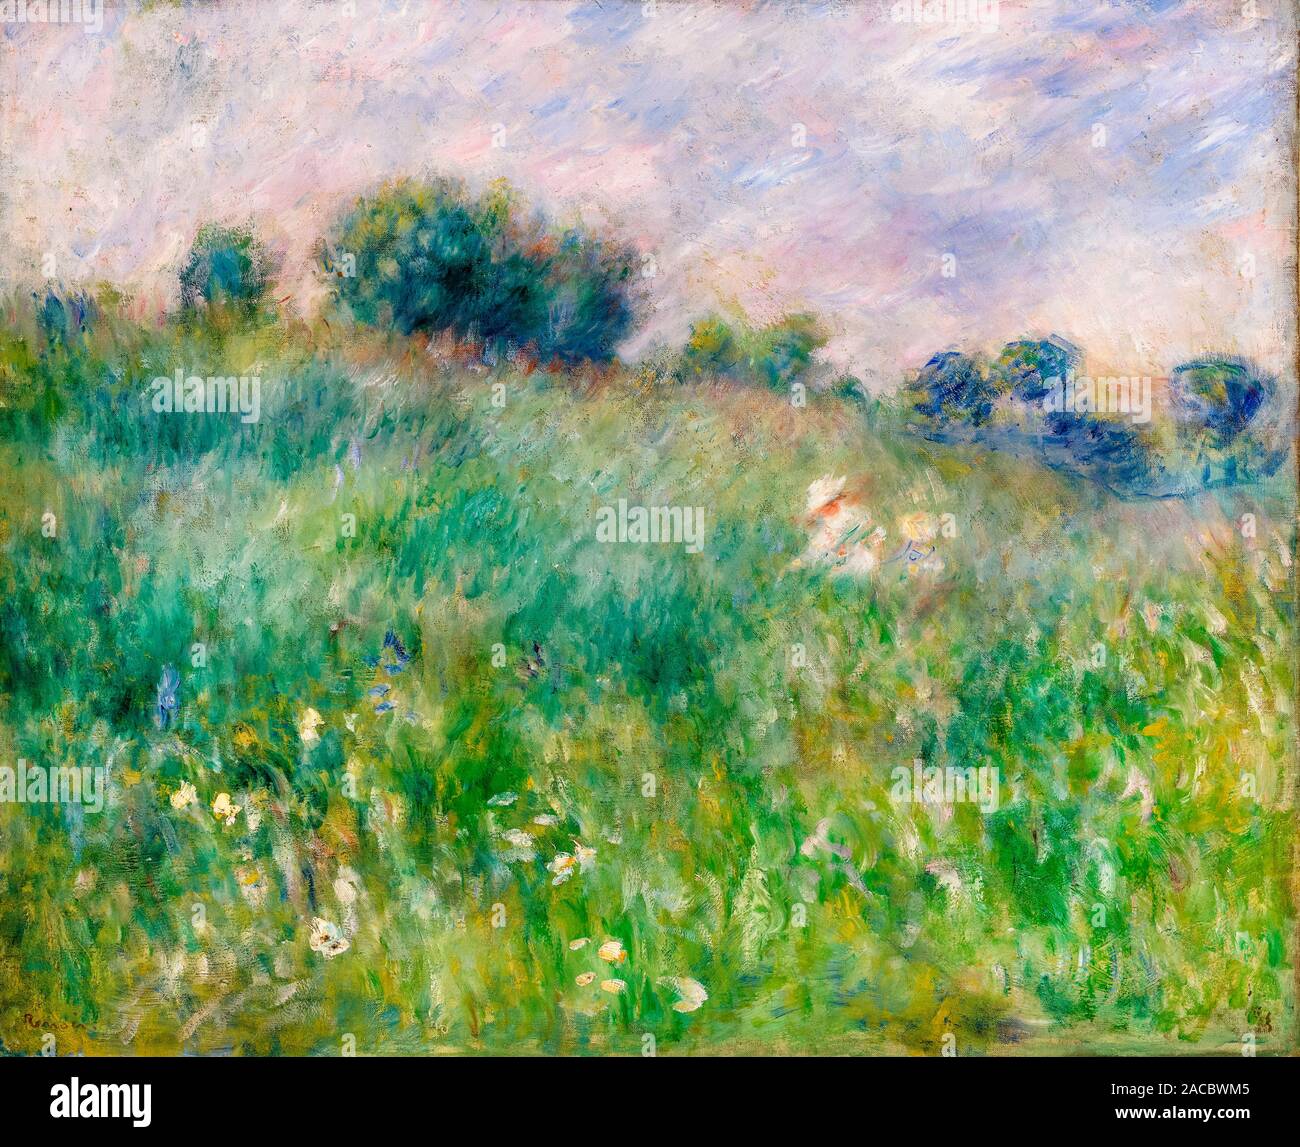 Pierre Auguste Renoir, Meadow, (La Prairie), landscape painting, 1880 Stock Photo